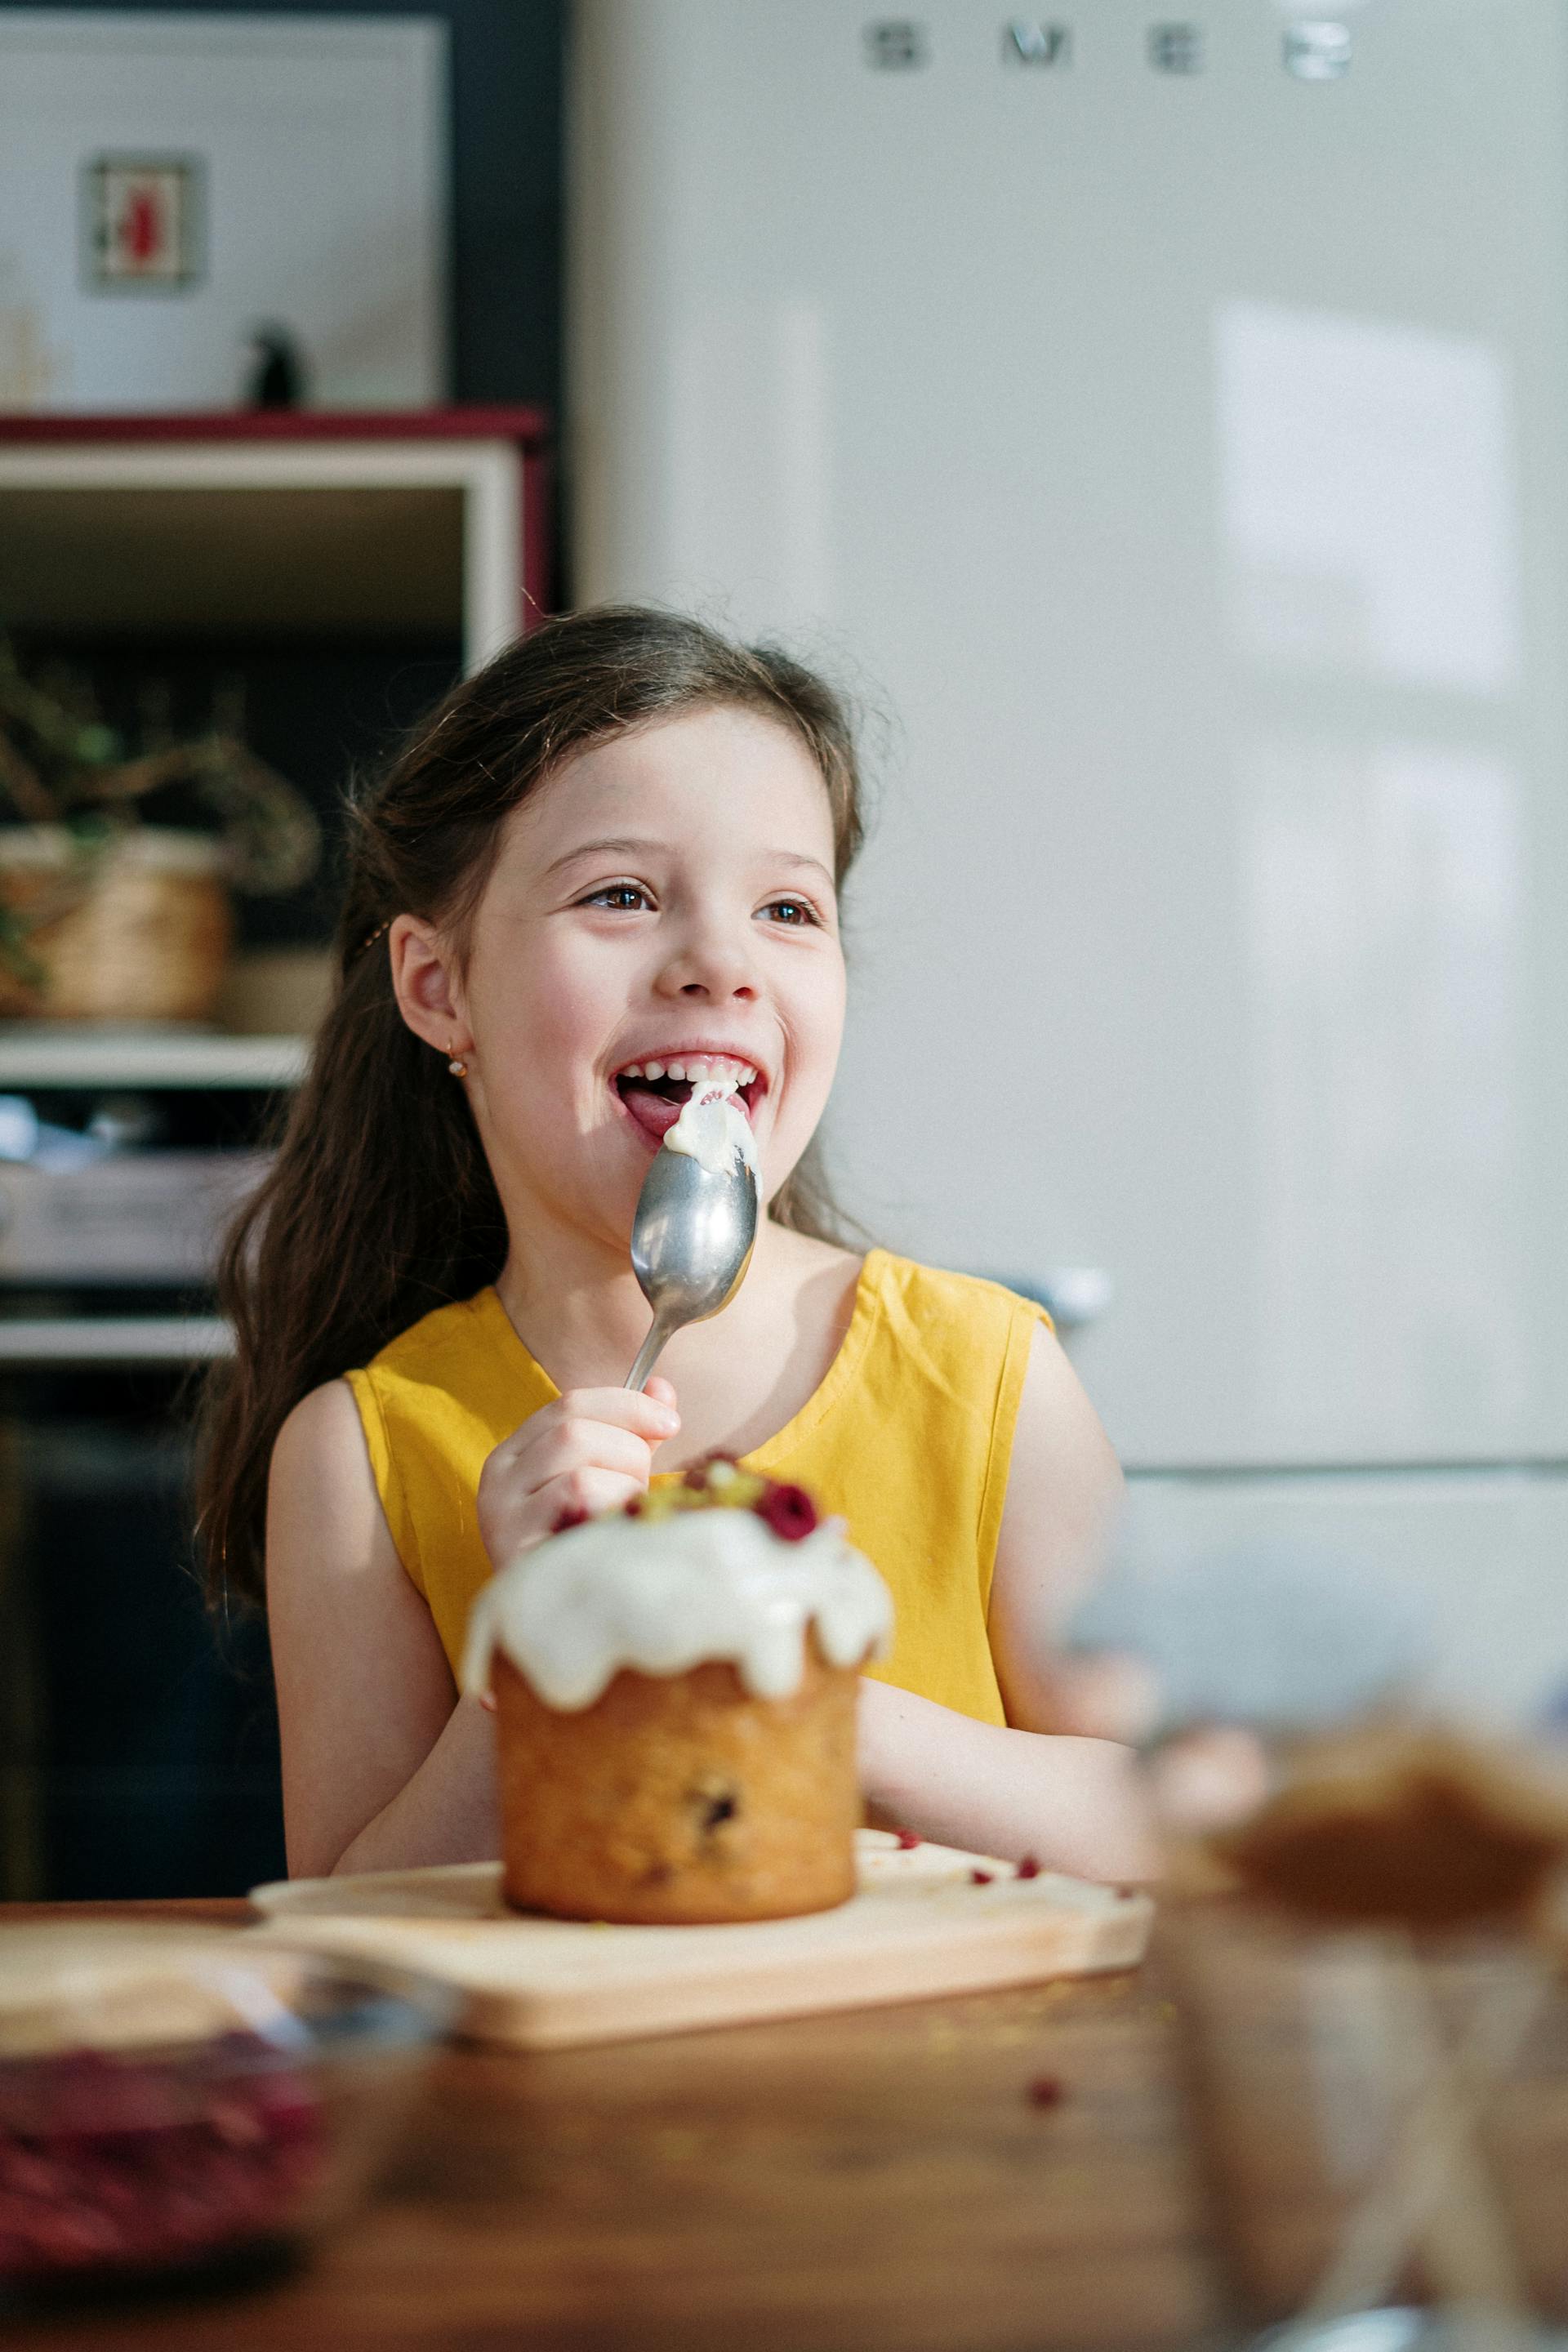 Una niña comiendo Pastel | Fuente: Pexels